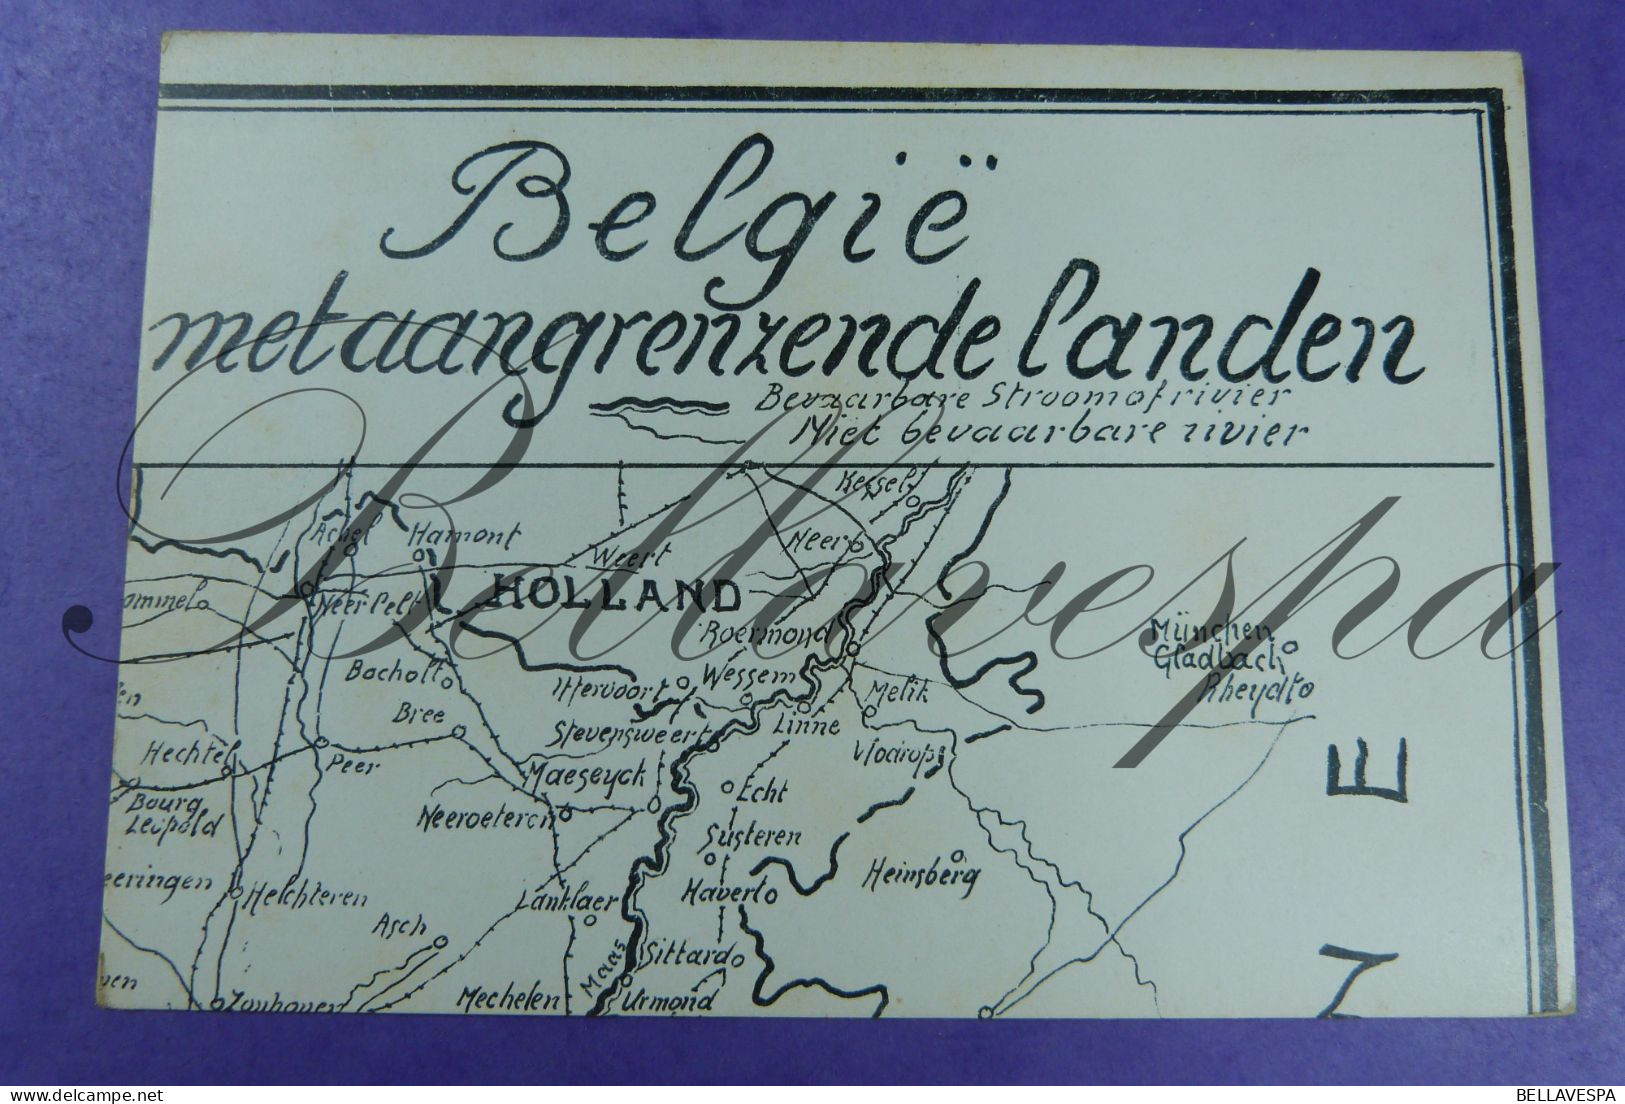 Postkaart puzzel Peniche waterwegen België Binnenvaart 12 x cpsm volledig  Druk  V.van Dieren Antw.